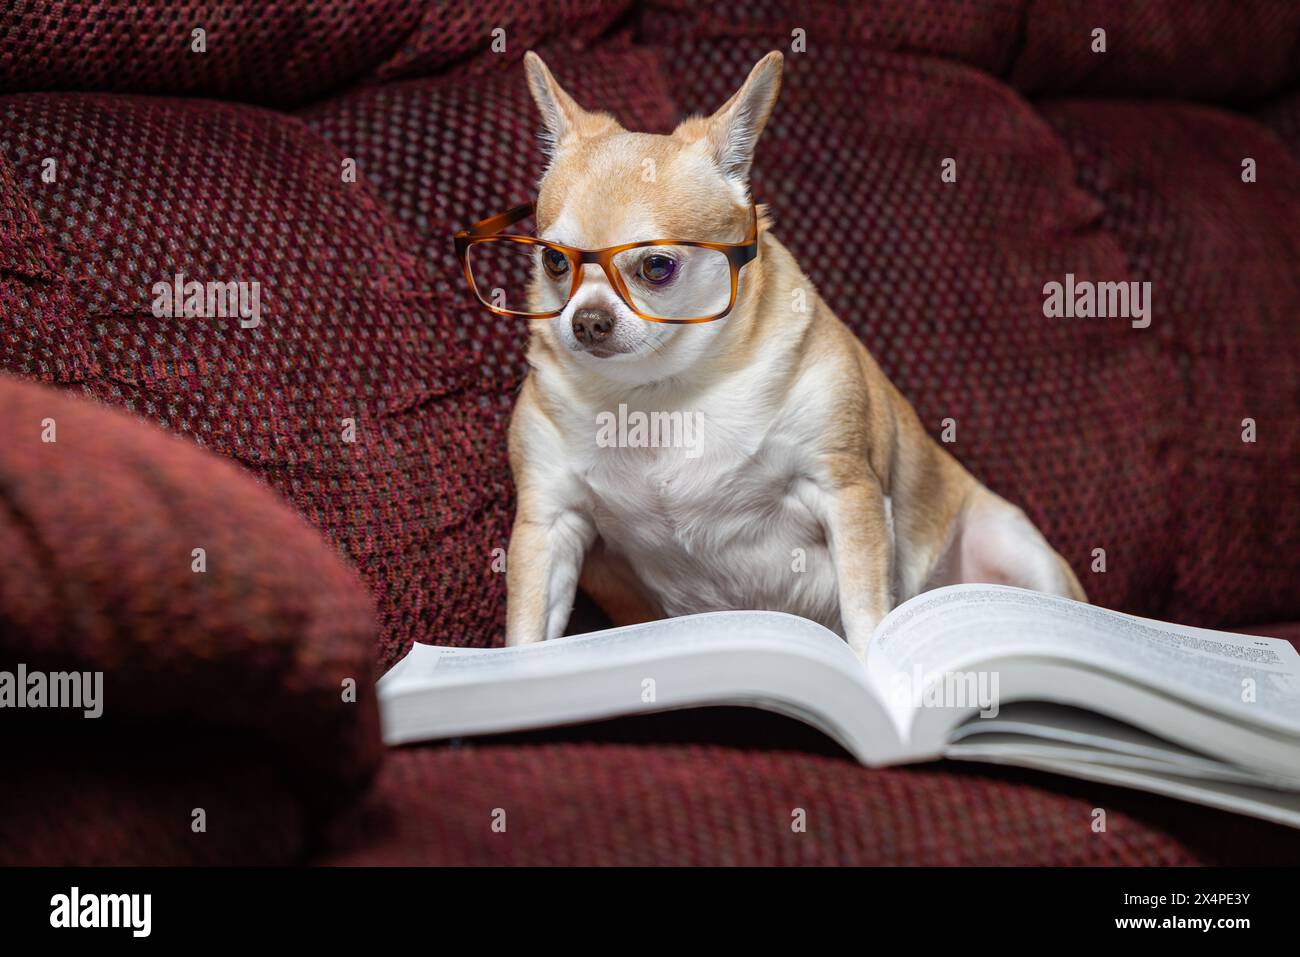 Ein kleiner chihuahua sitzt auf einer Couch mit einem Buch davor. Der Hund trägt eine Brille und liest das Buch. Die Szene ist verspielt und li Stockfoto